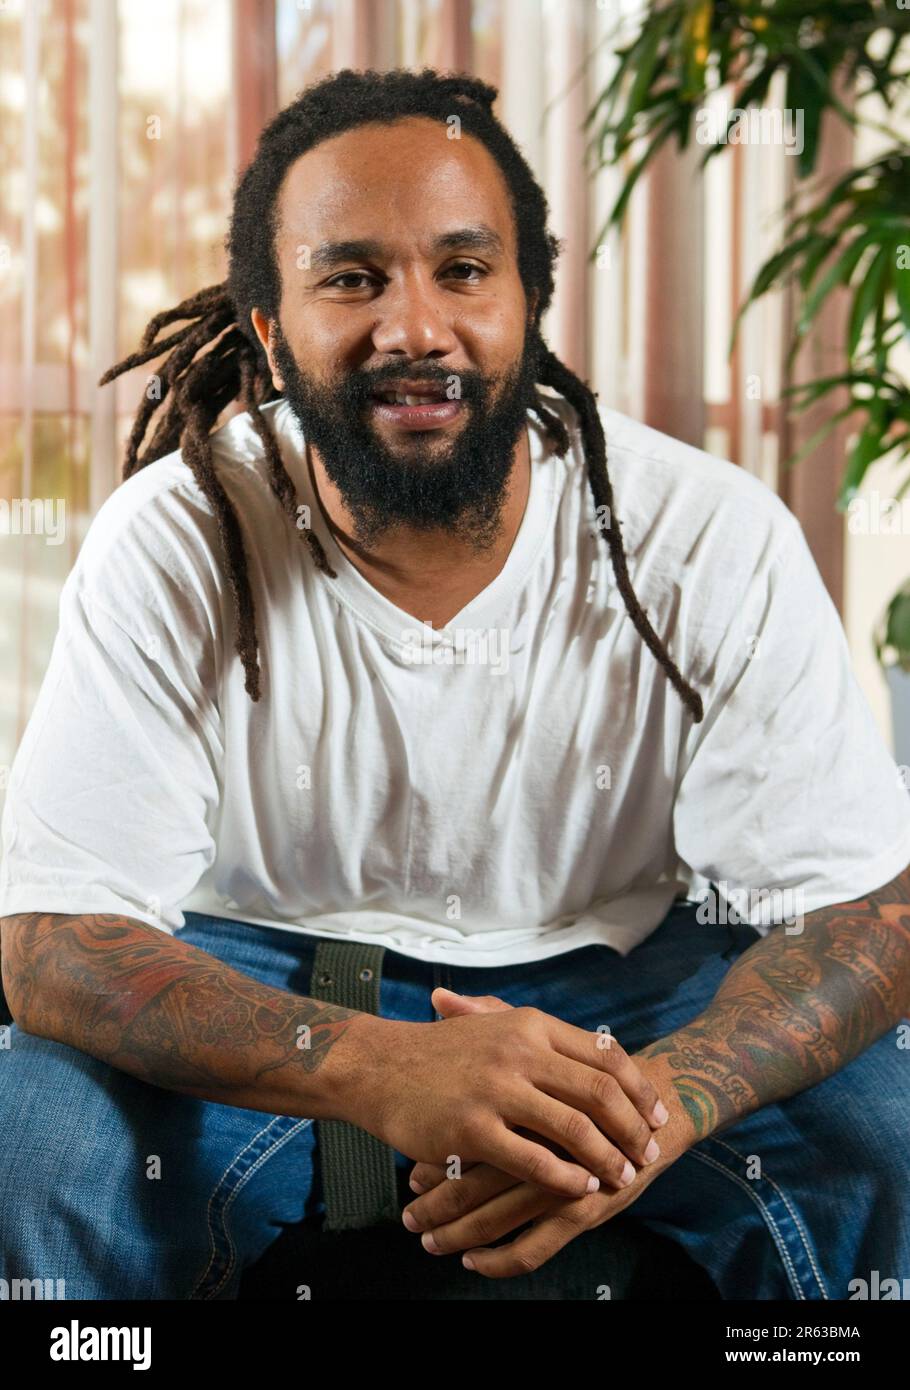 Al Raggamuffin Festival si esibisce Ky-mani Marley, figlio dell'icona reggae Bob Marley, morto 30 anni fa Foto Stock